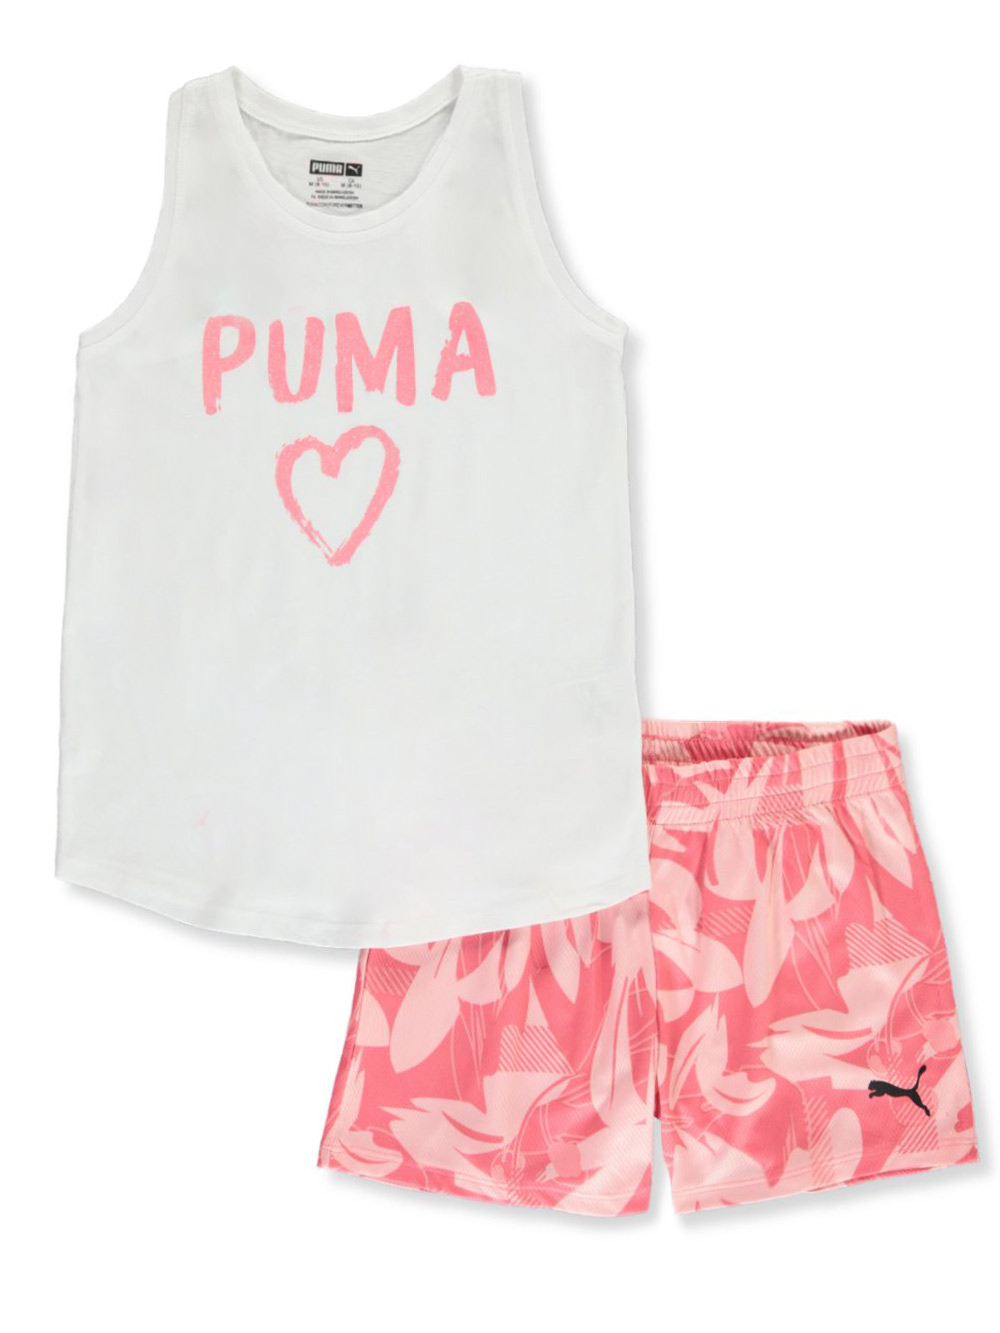 puma outfit sets